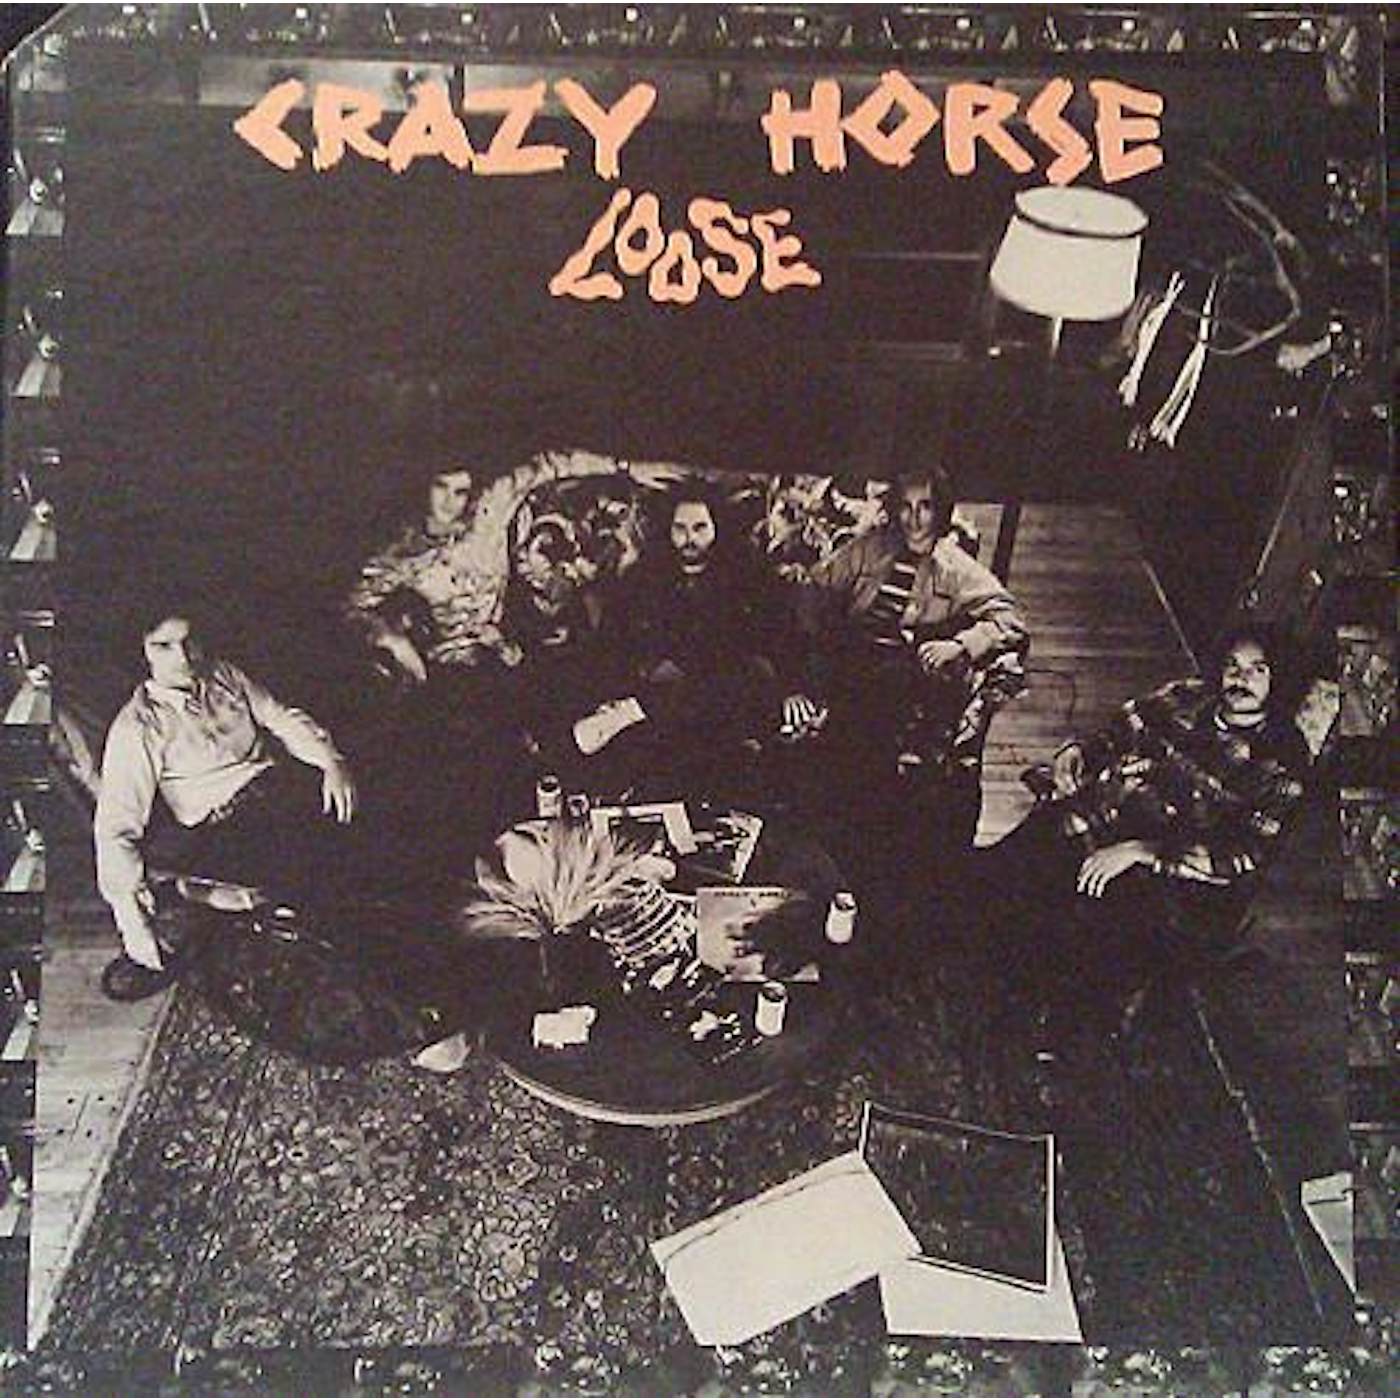 CRAZY HORSE CD